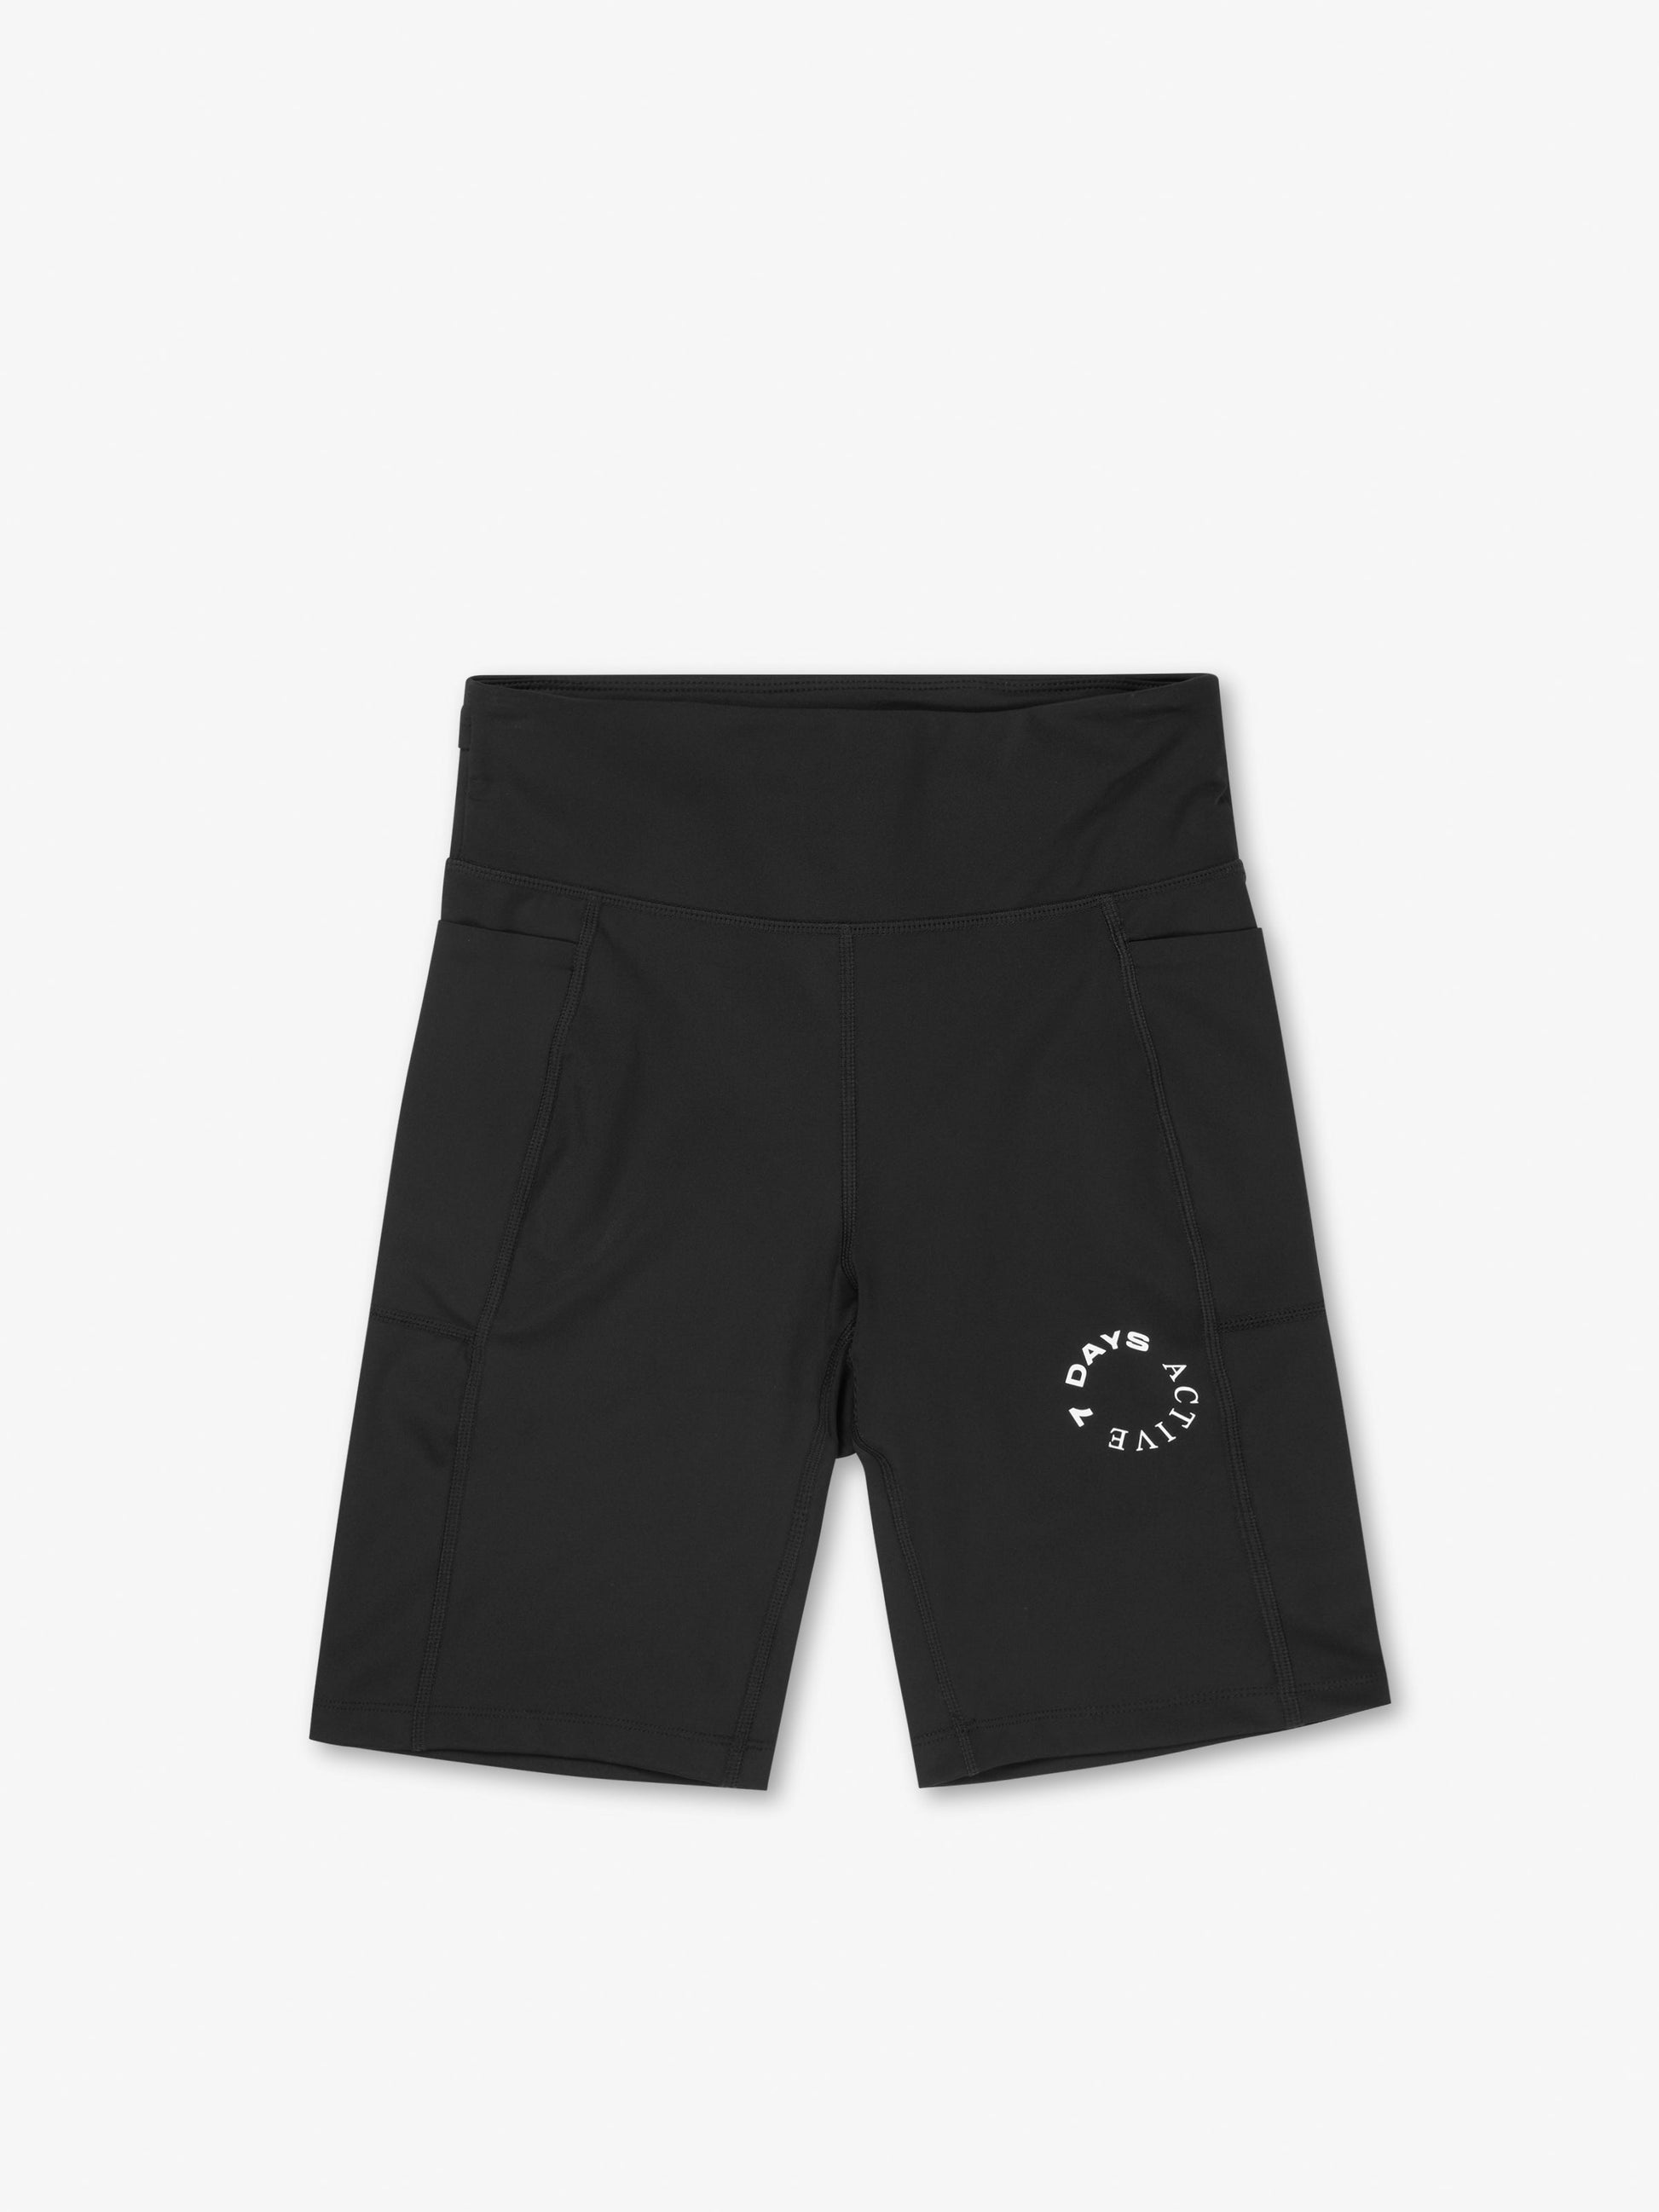 7 DAYS Bike Shorts Shorts 001 Black